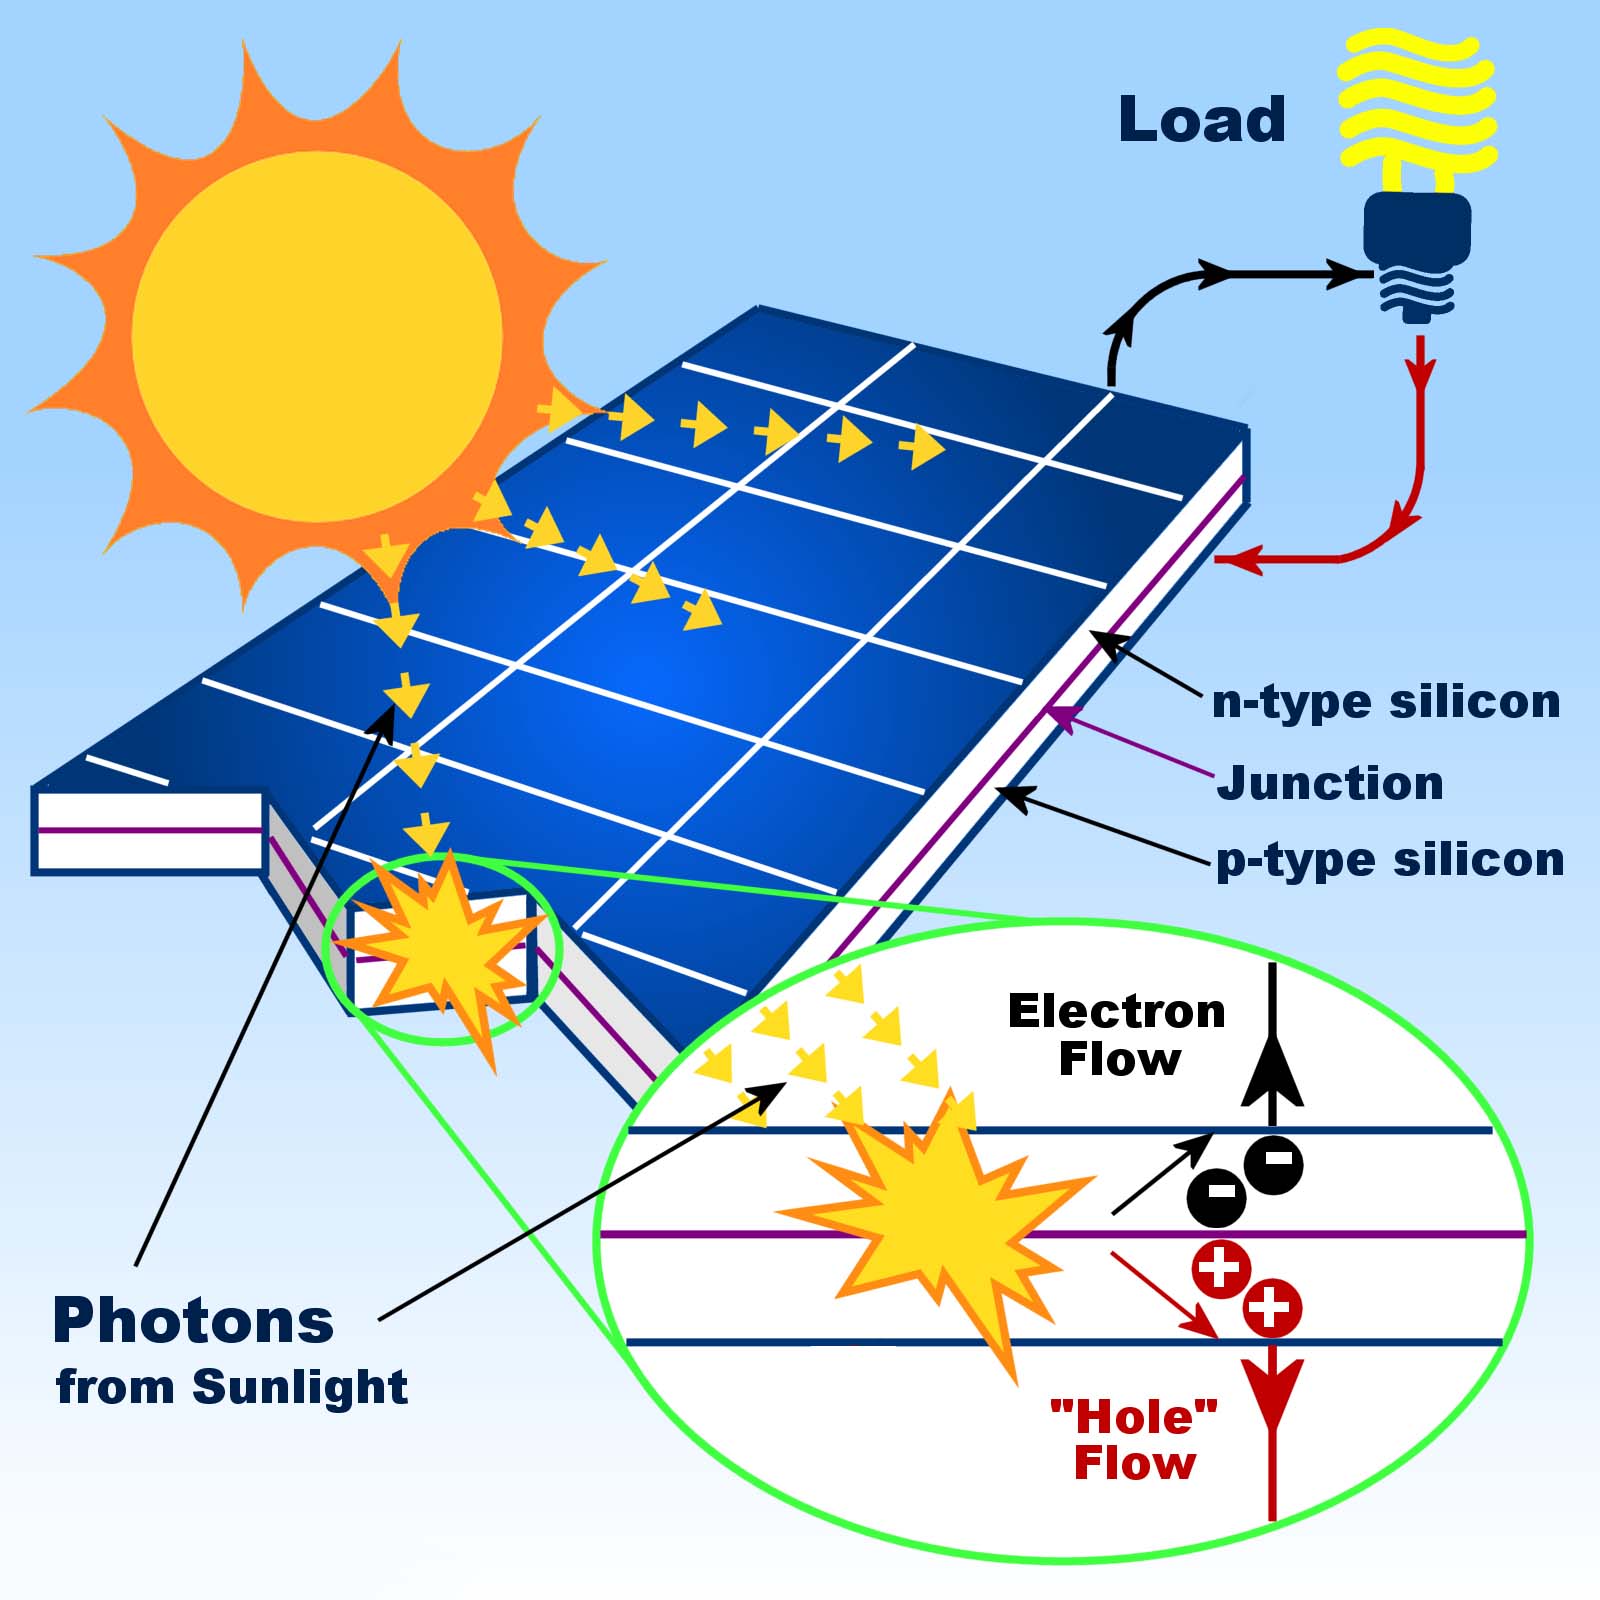 رخيصة الثمن الألواح الشمسية أحادية اللون عالية الكفاءة لوحة للطاقة الشمسية توفير الطاقة لوحة للطاقة الشمسية الخفيفة أدى ضوء الشارع